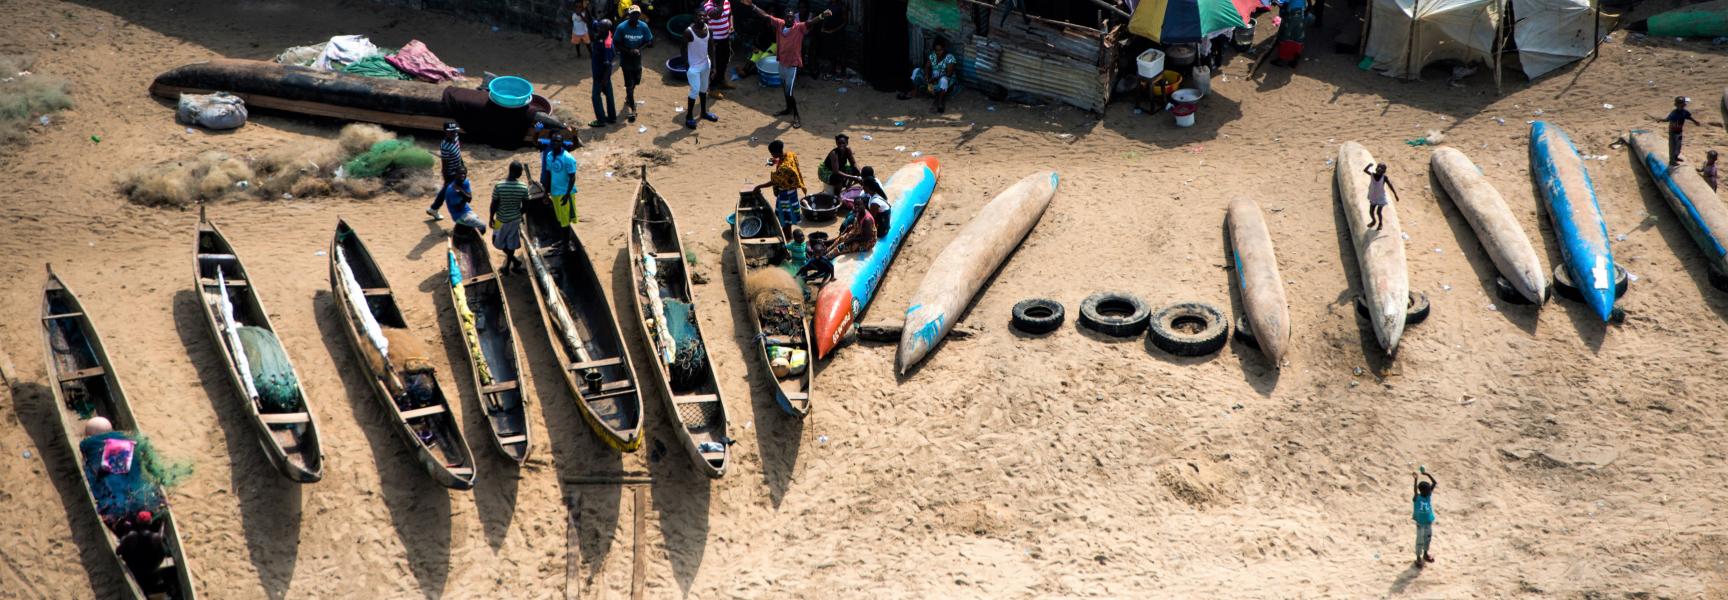 Pescadores y sus familias junto a botes en una playa en Liberia